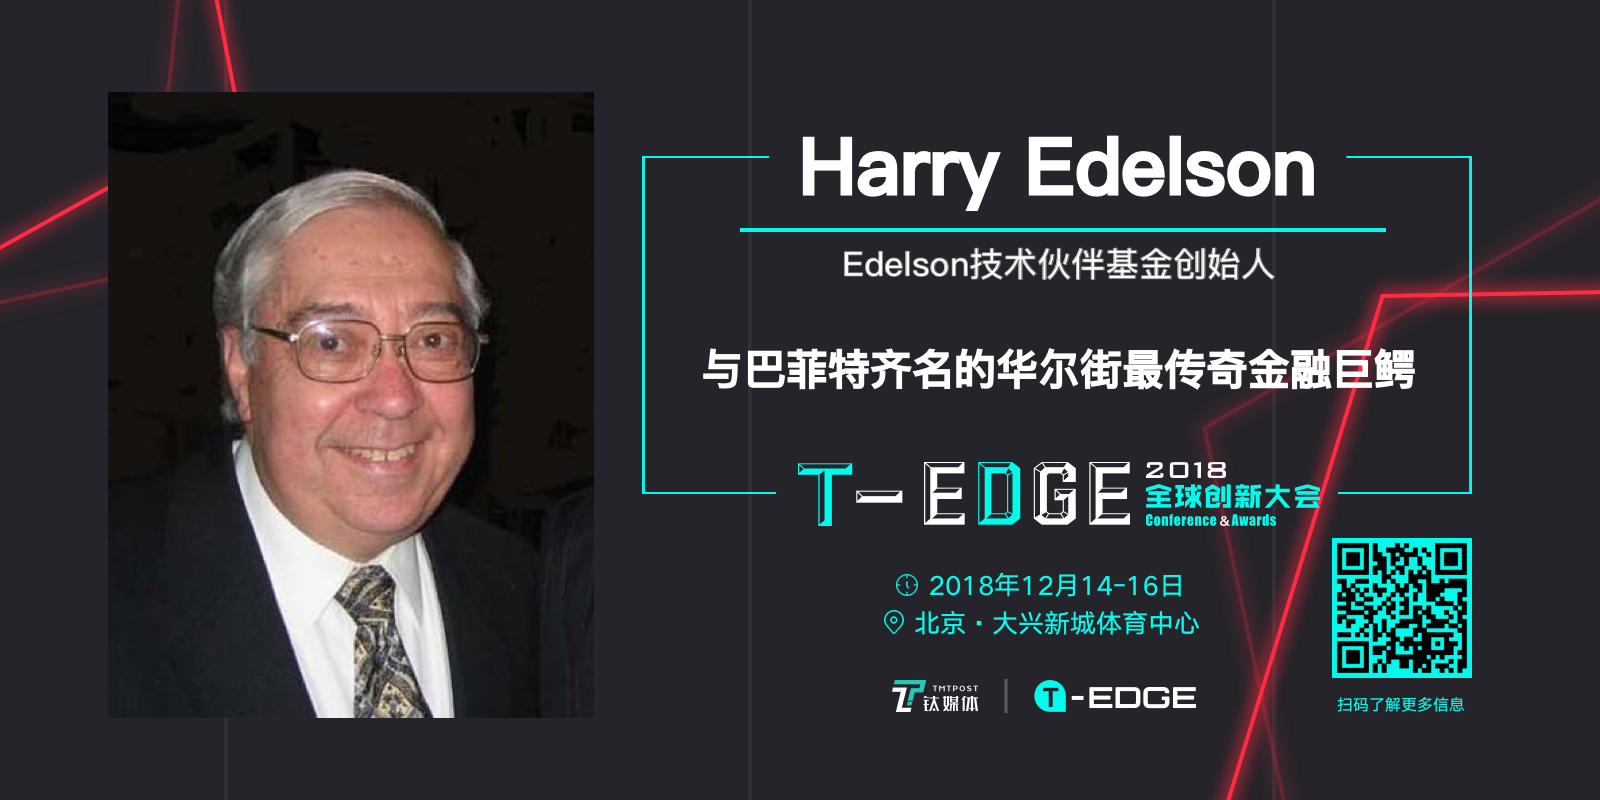 全球商业传奇人物齐聚T-EDGE 全球创新大会